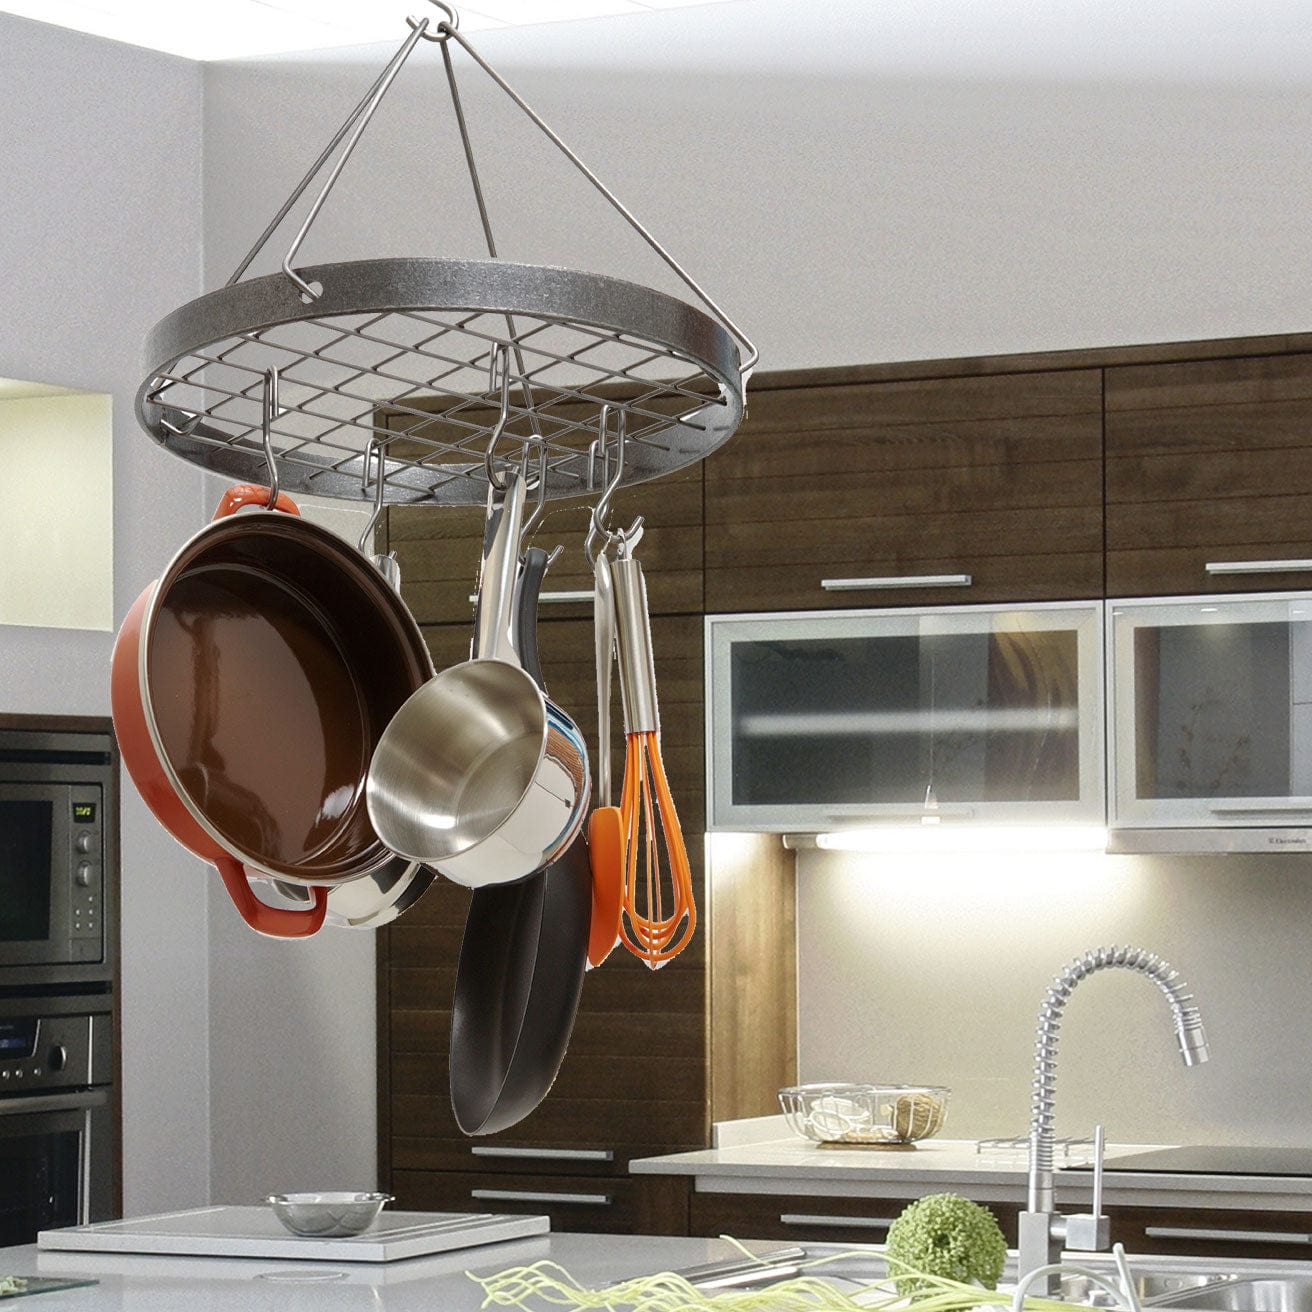 Design-Conscious Utensil Holders : Home Kitchen Utensil Holder